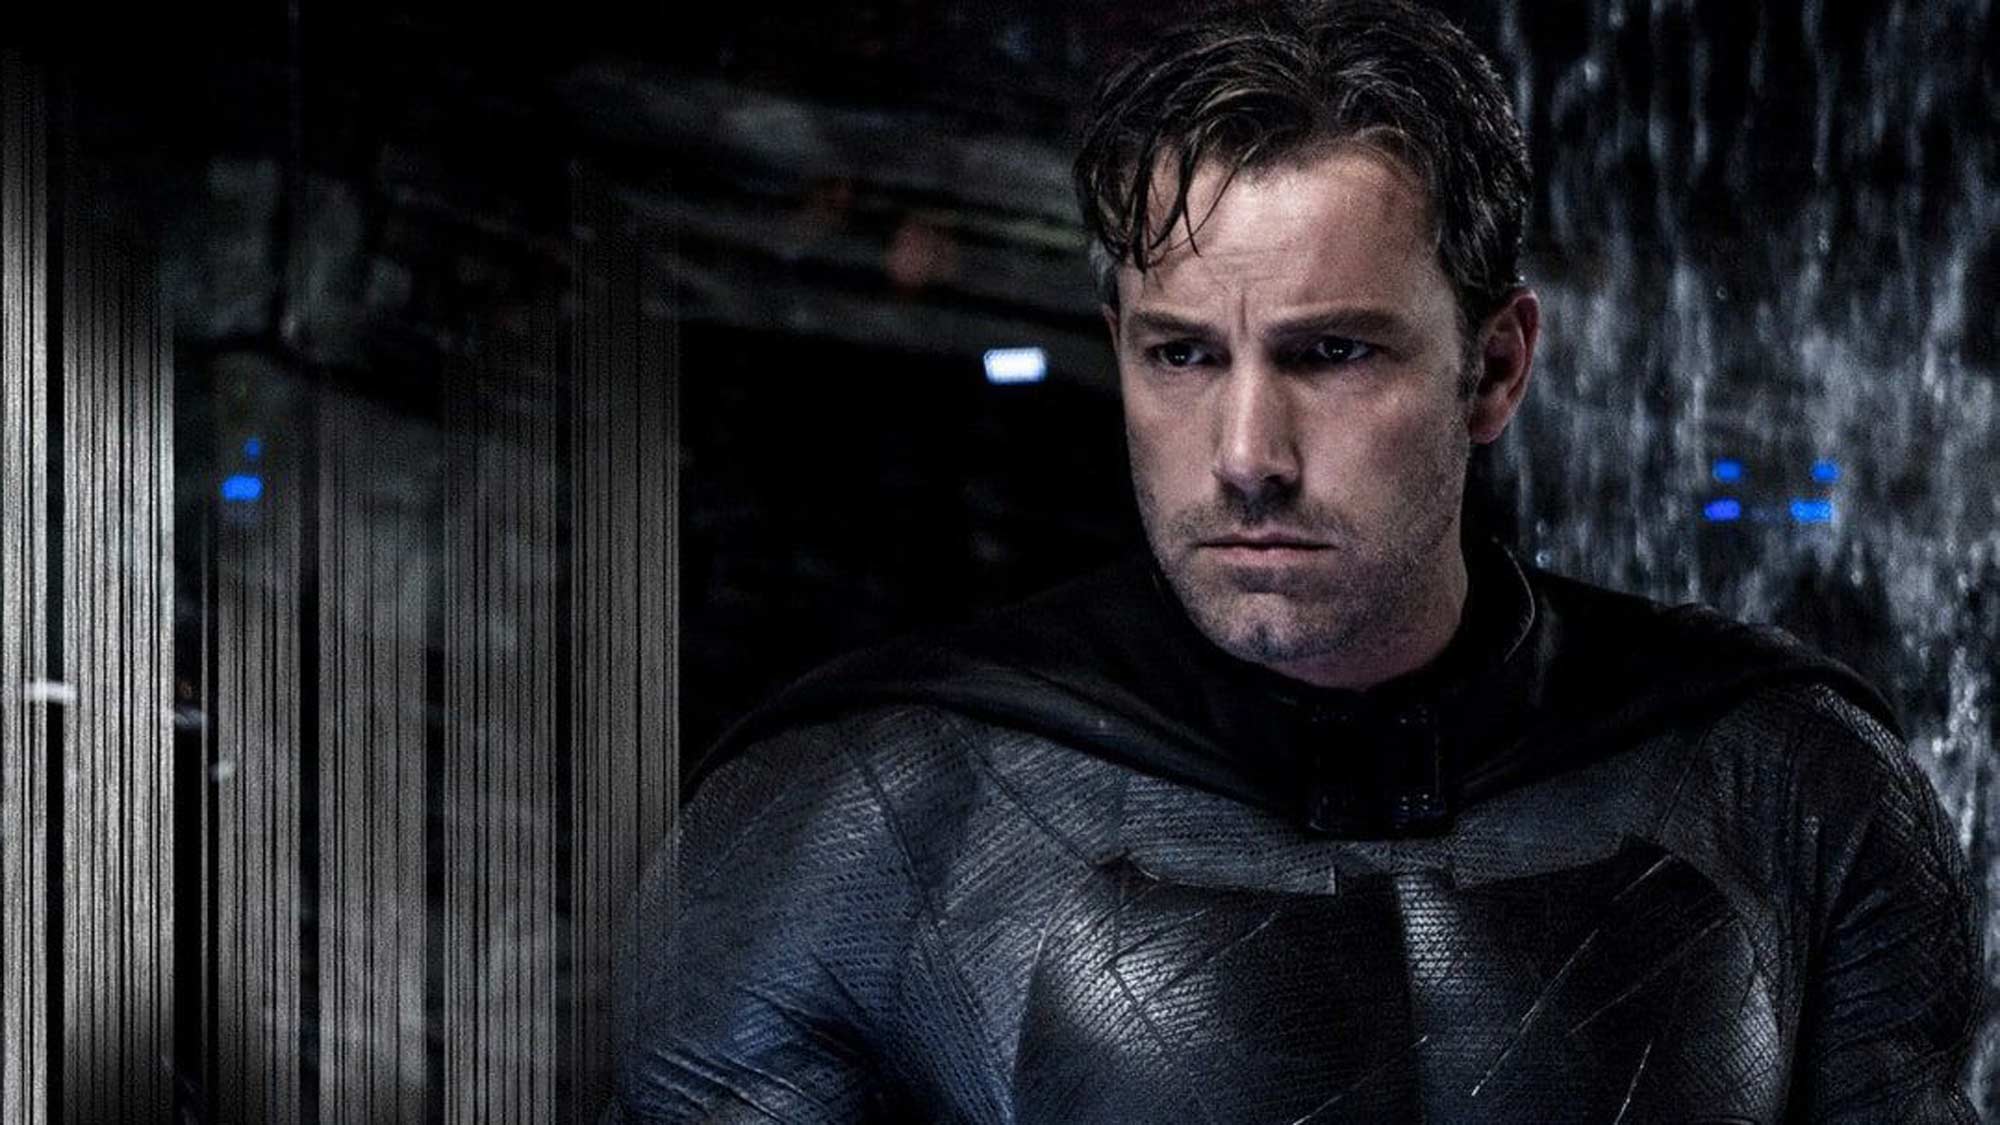 בן אפלק בתור באטמן/ברוס וויין ב-Batman v Superman Dawn of Justice, הסרט הרביעי של DC לפי סדר הסיפור